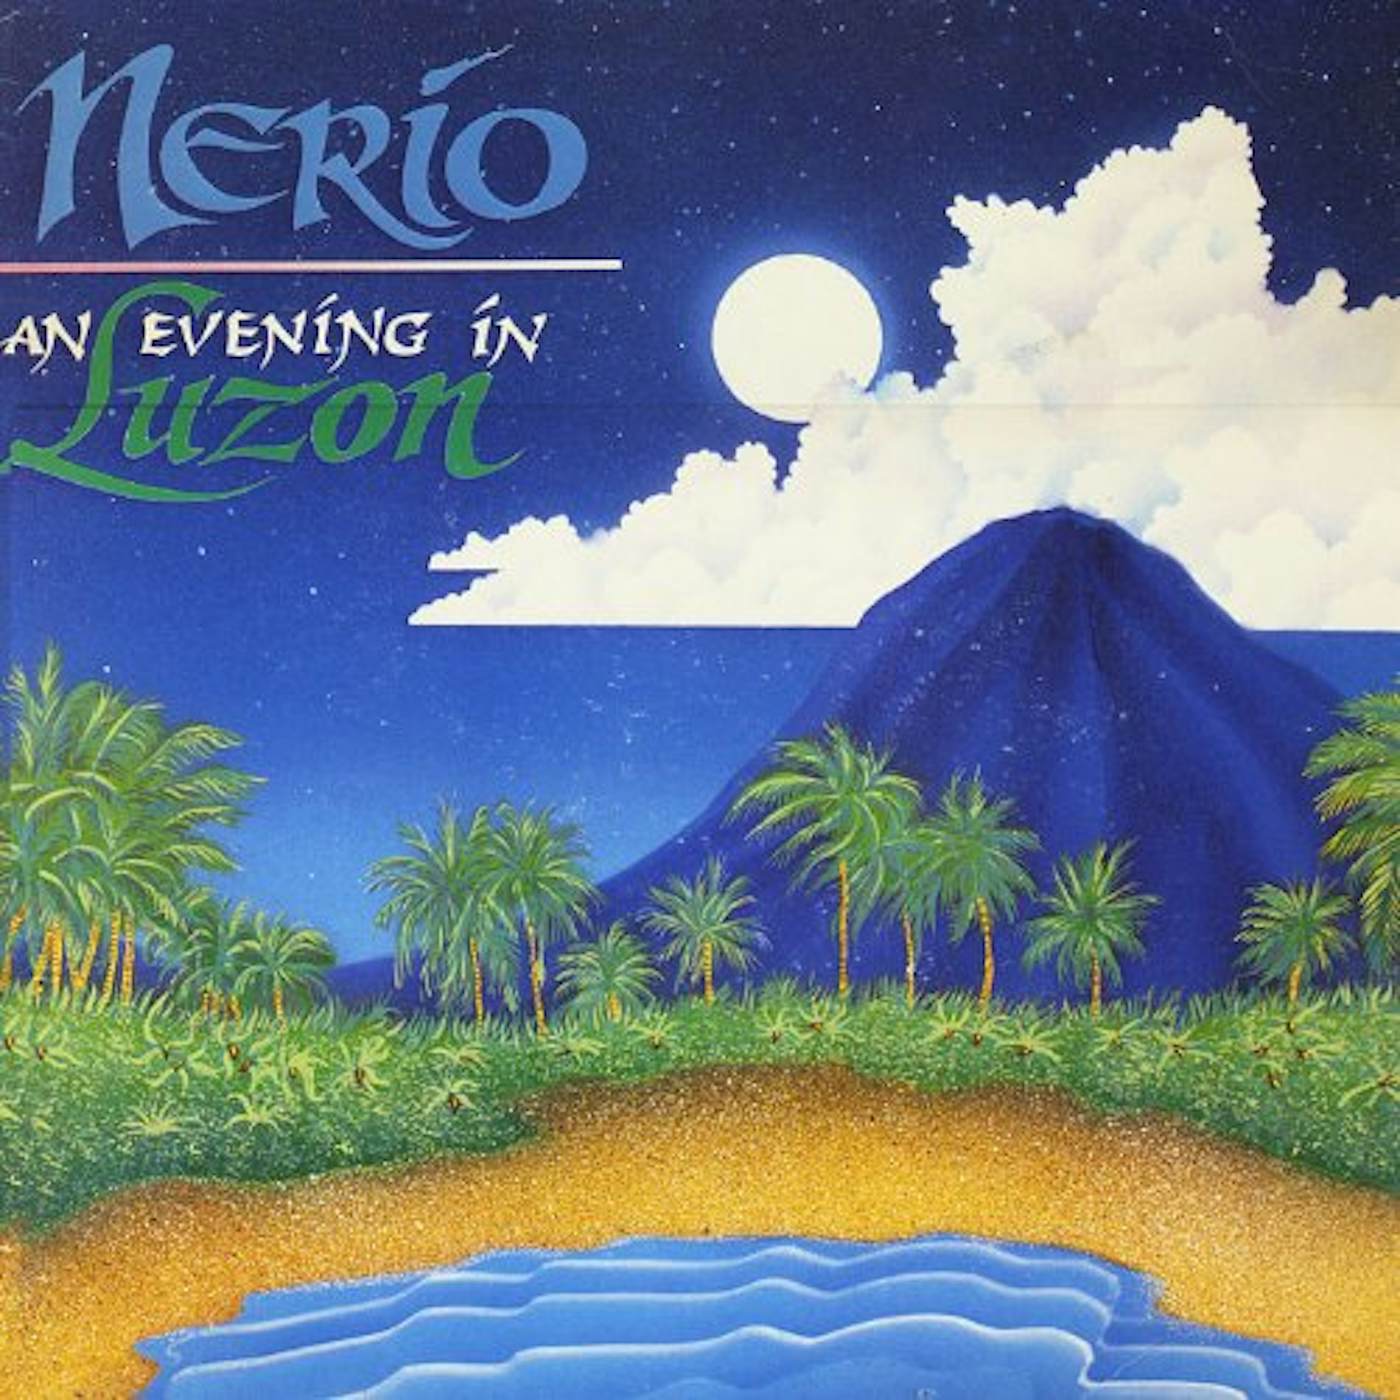 Nerio Degracia NERIO AN EVENING IN LUZON Vinyl Record